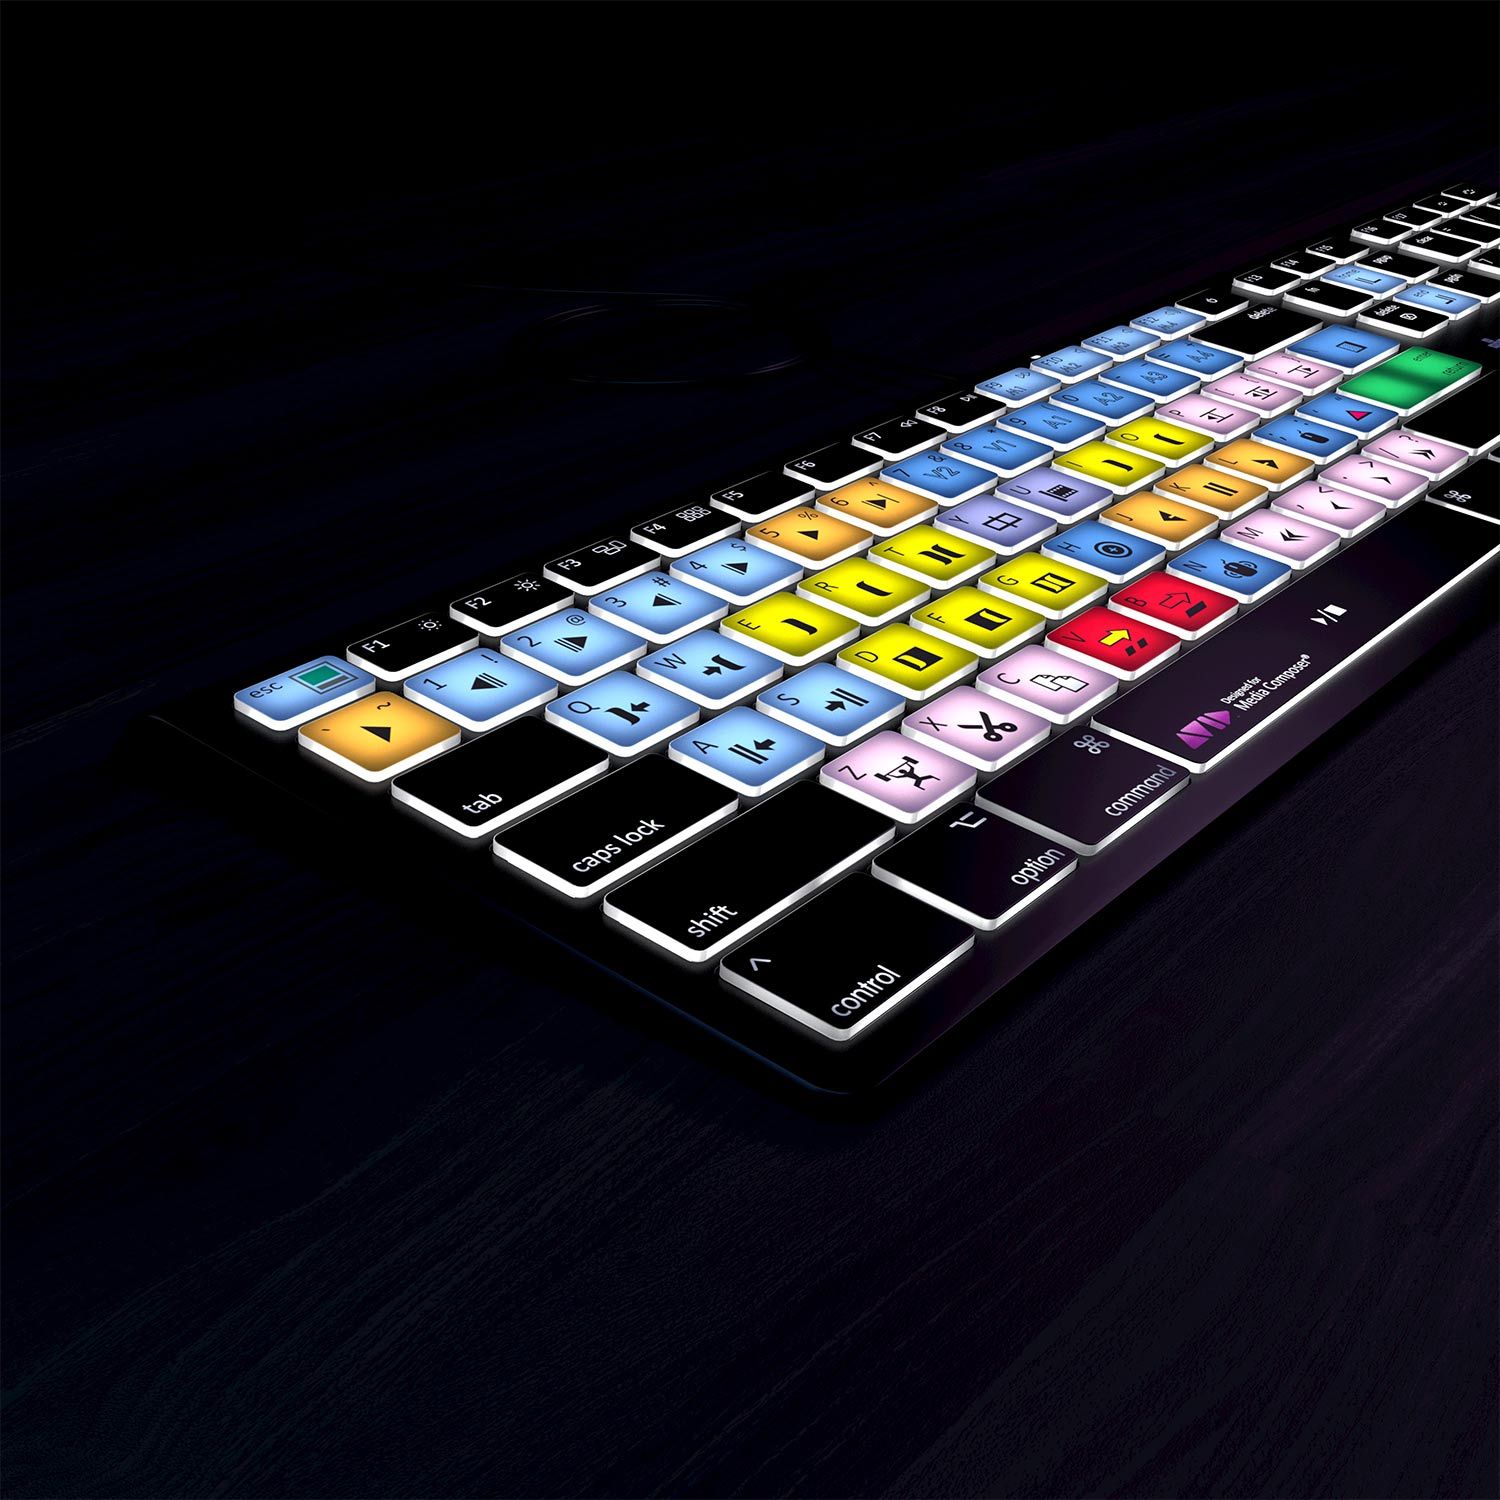 Avid Media Composer Keyboard - Backlit - For Mac or PC - Editors Keys